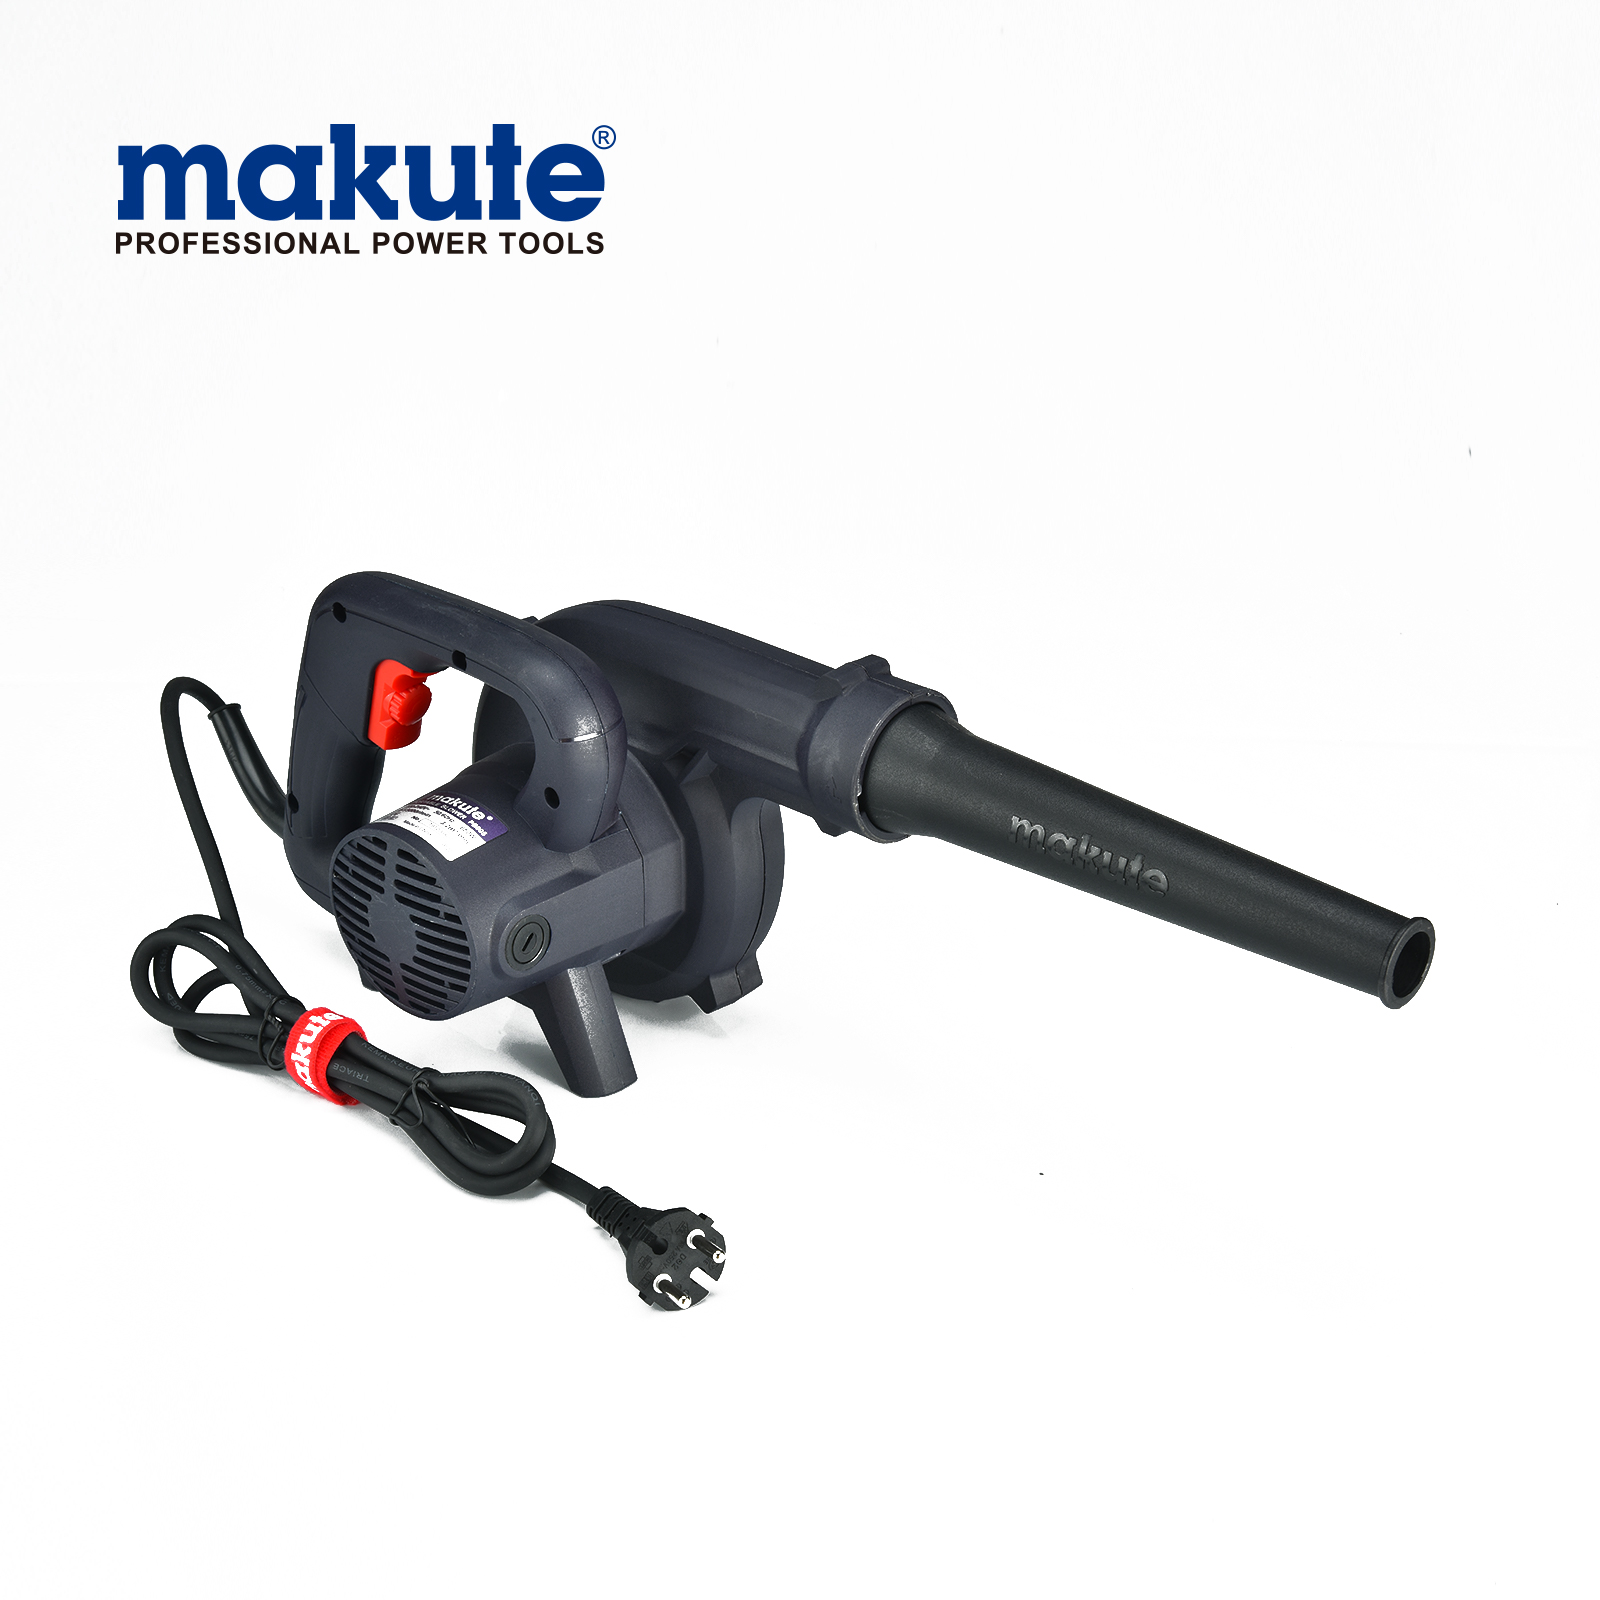 China makute PB005 mano portátil de acero azul herramientas de madera eléctricas soplador de aire frío portátil